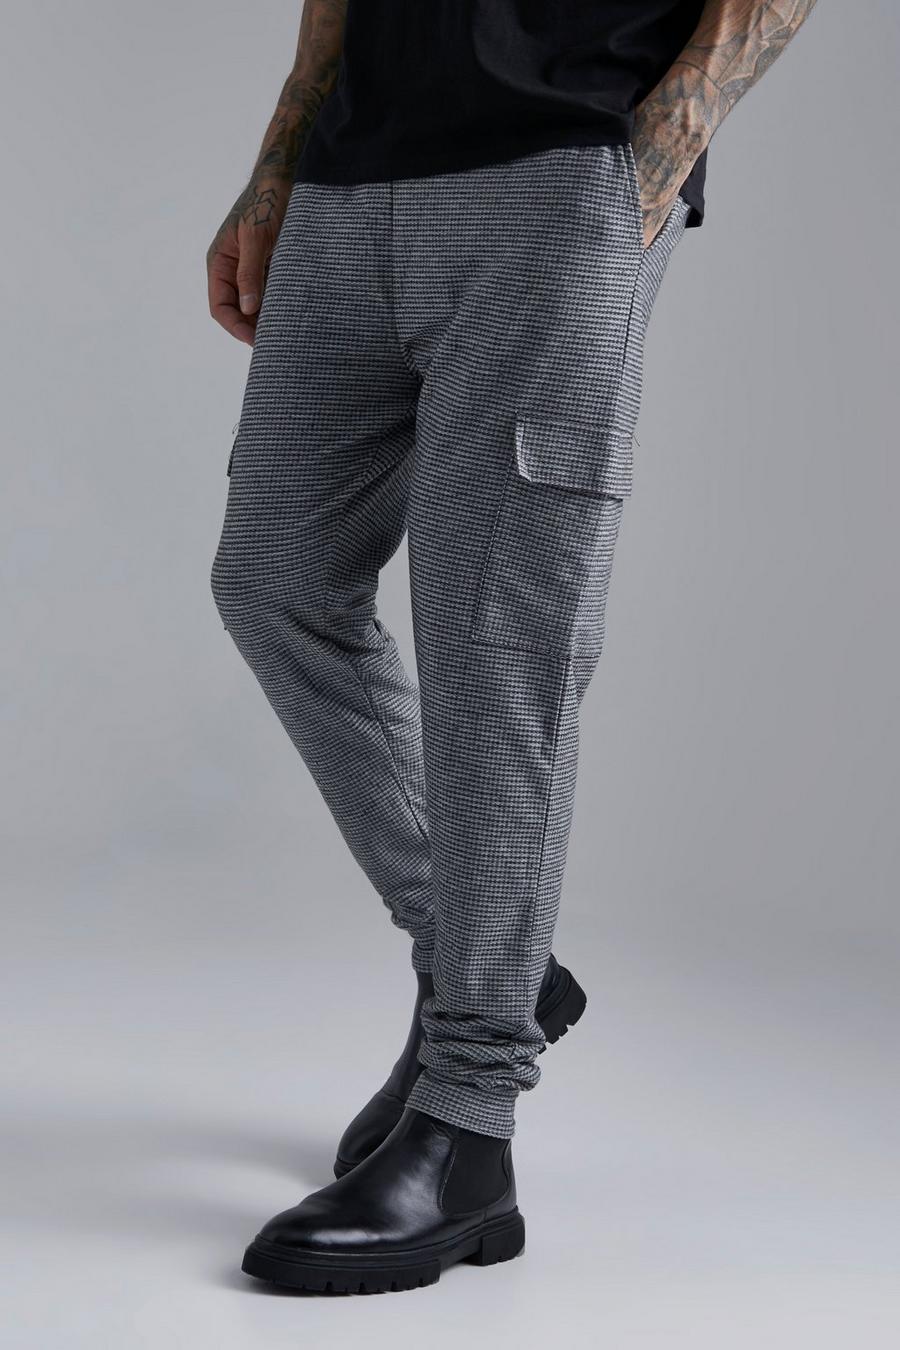 Pantalón deportivo Tall elegante cargo de jacquard con botamanga, Dark grey gris